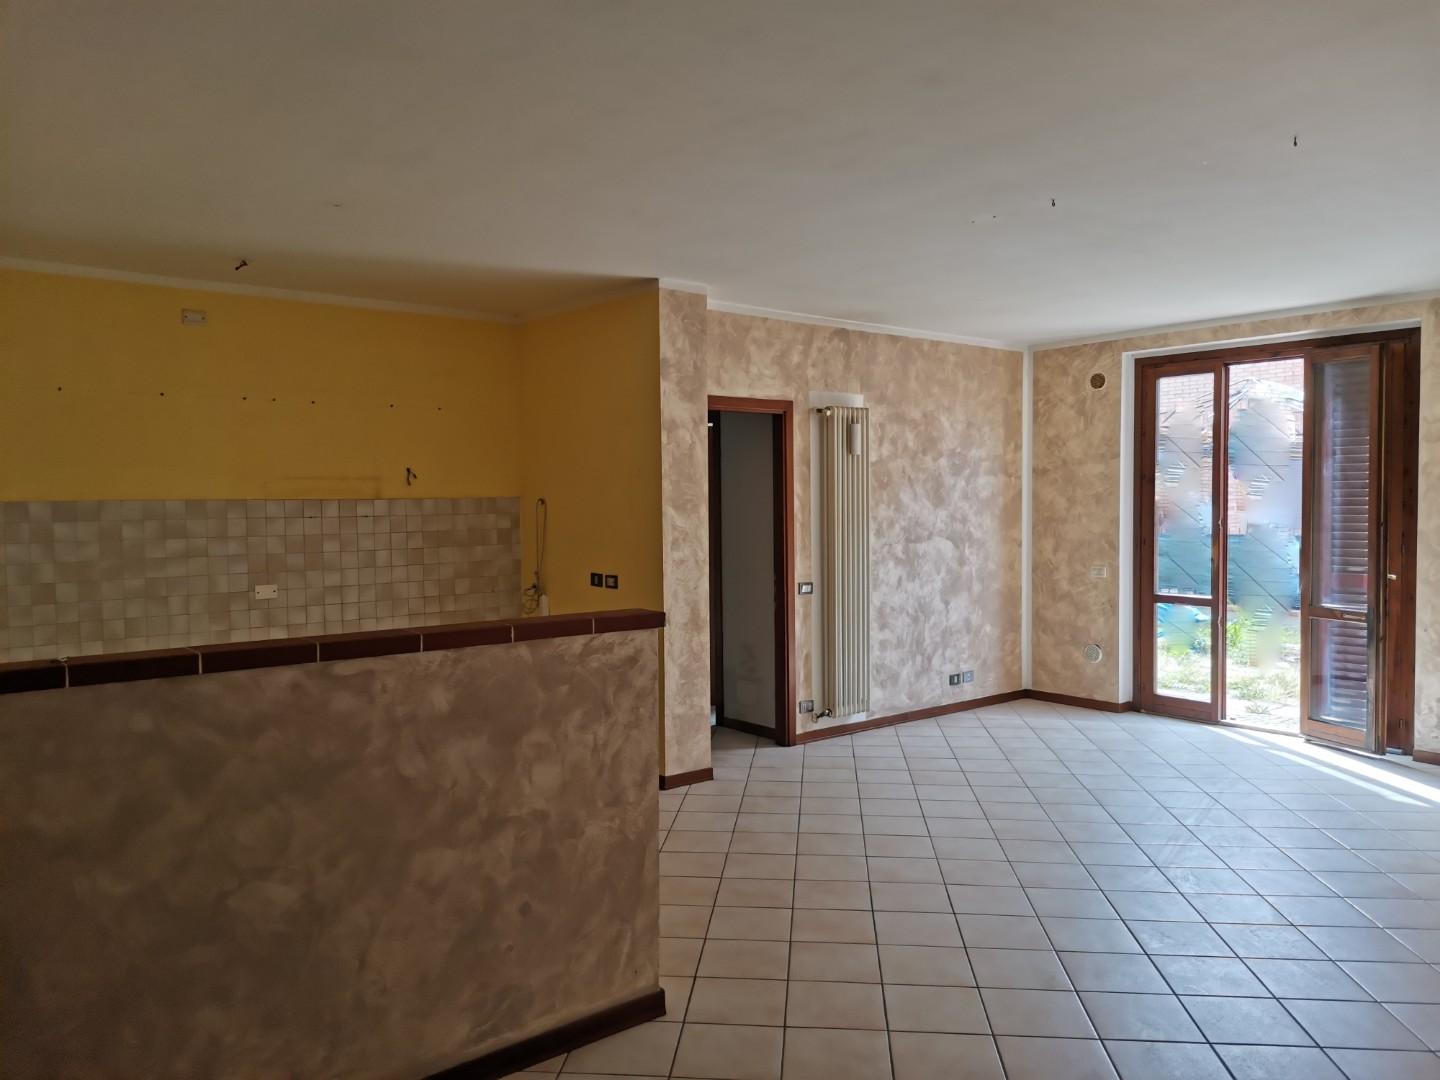 Villa Tri-Quadrifamiliare in vendita a Colle di Val d'Elsa, 4 locali, prezzo € 260.000 | PortaleAgenzieImmobiliari.it